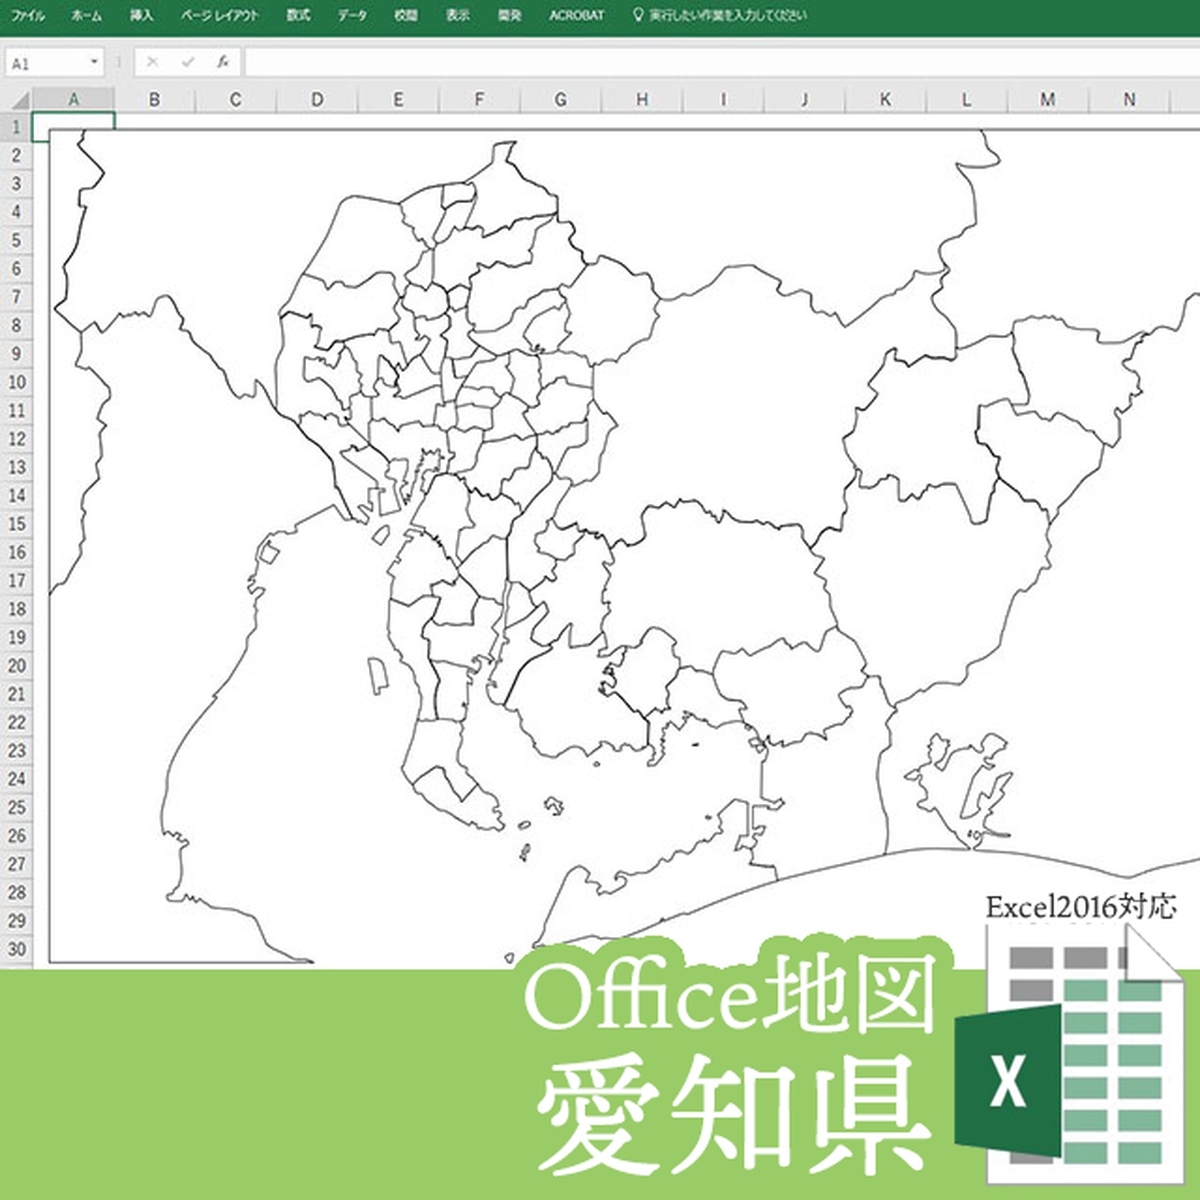 愛知 県 地図 画像